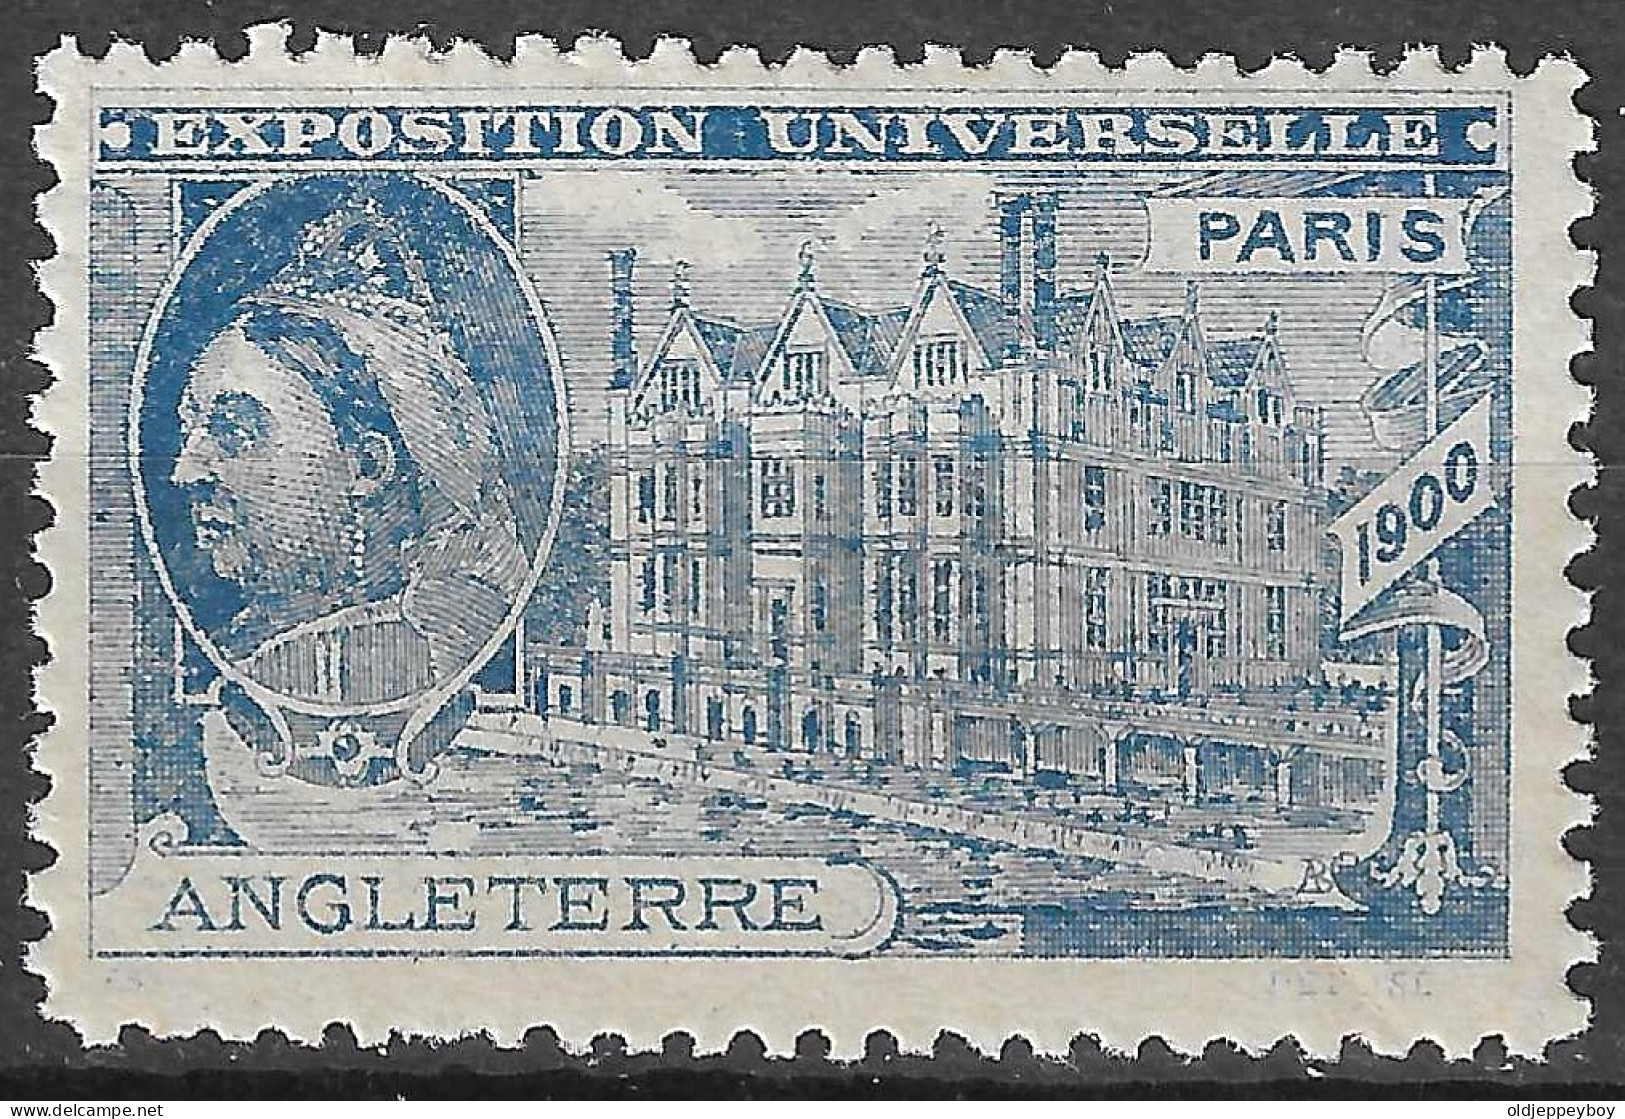 FRANCE ERINOPHILIE FAIR EXPOSITION UNIVERSELLE 1900 PARIS ANGLETERRE ENGLAND QUEEN Vignette CINDERELLA MNH** - 1900 – Paris (France)